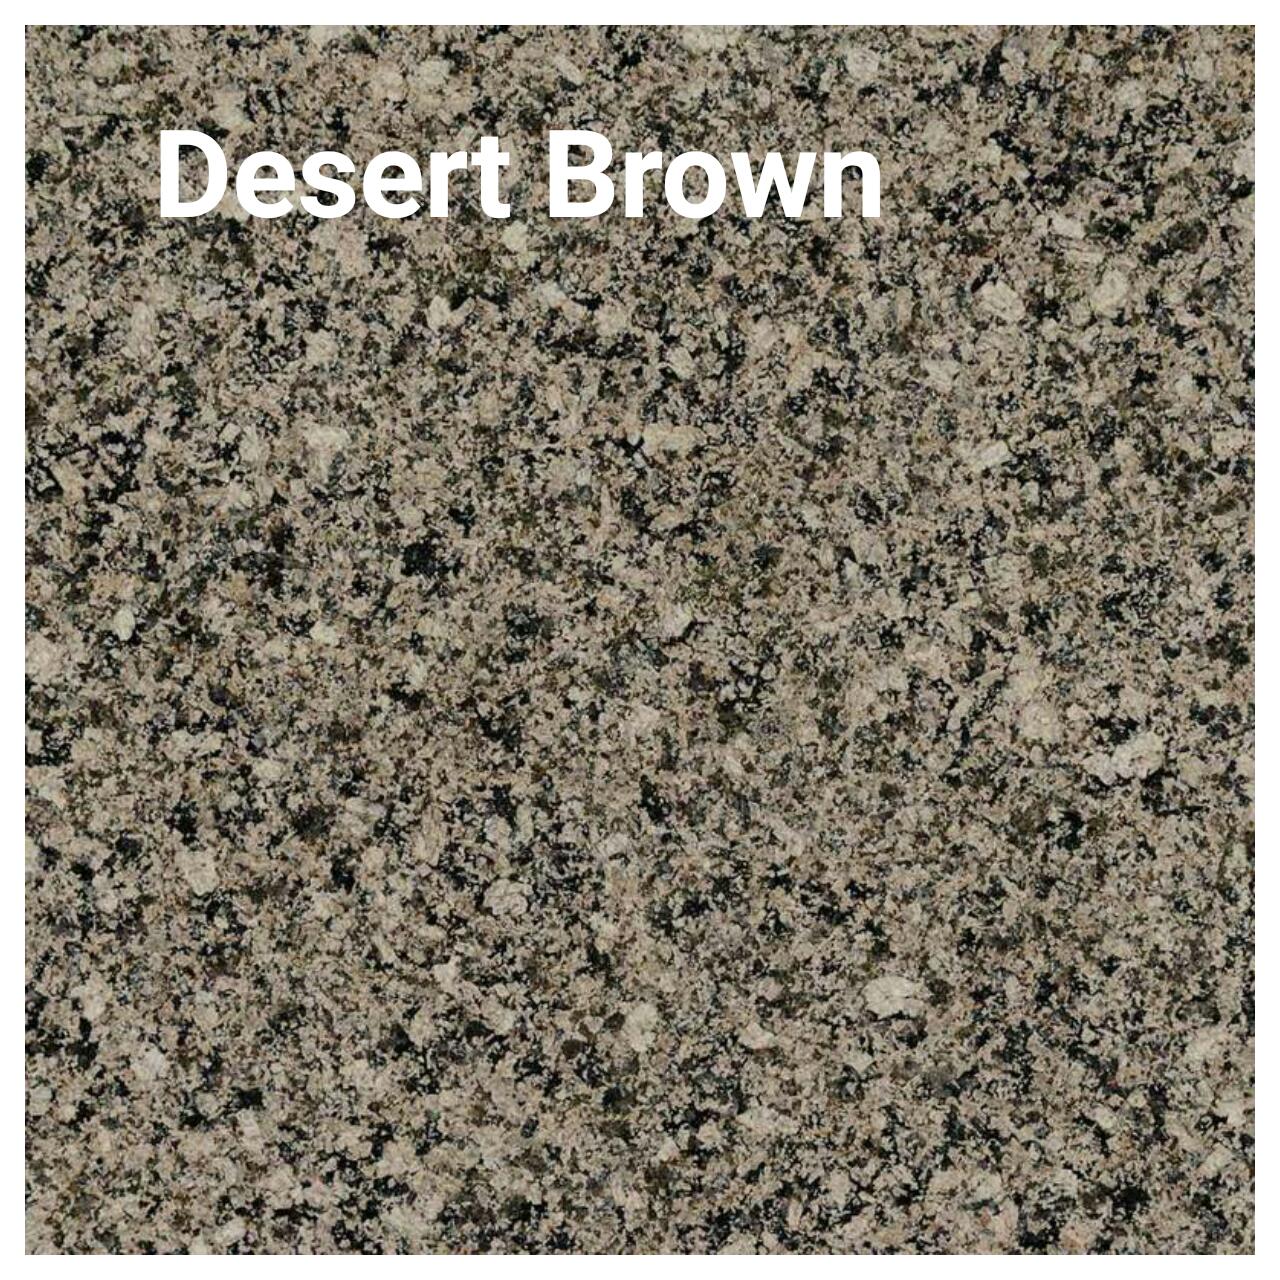 Desert Brown